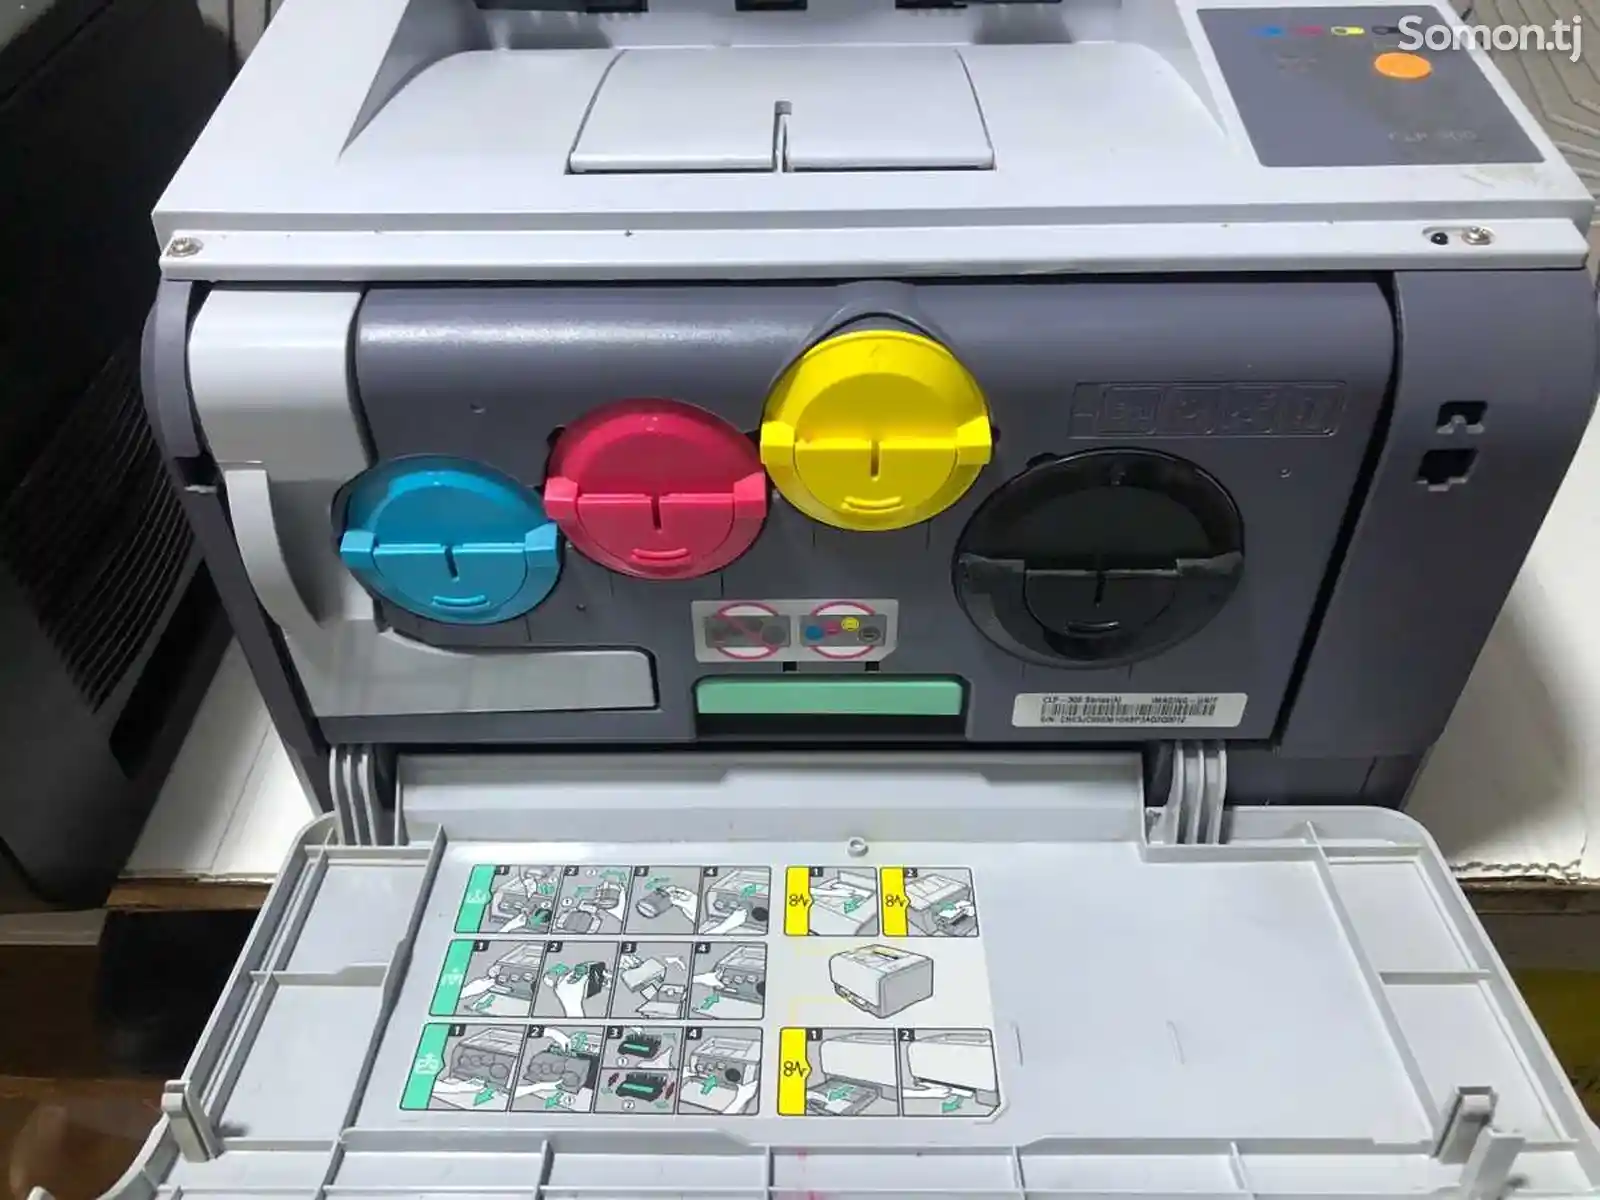 Цветной принтер Samsung clp-300-2